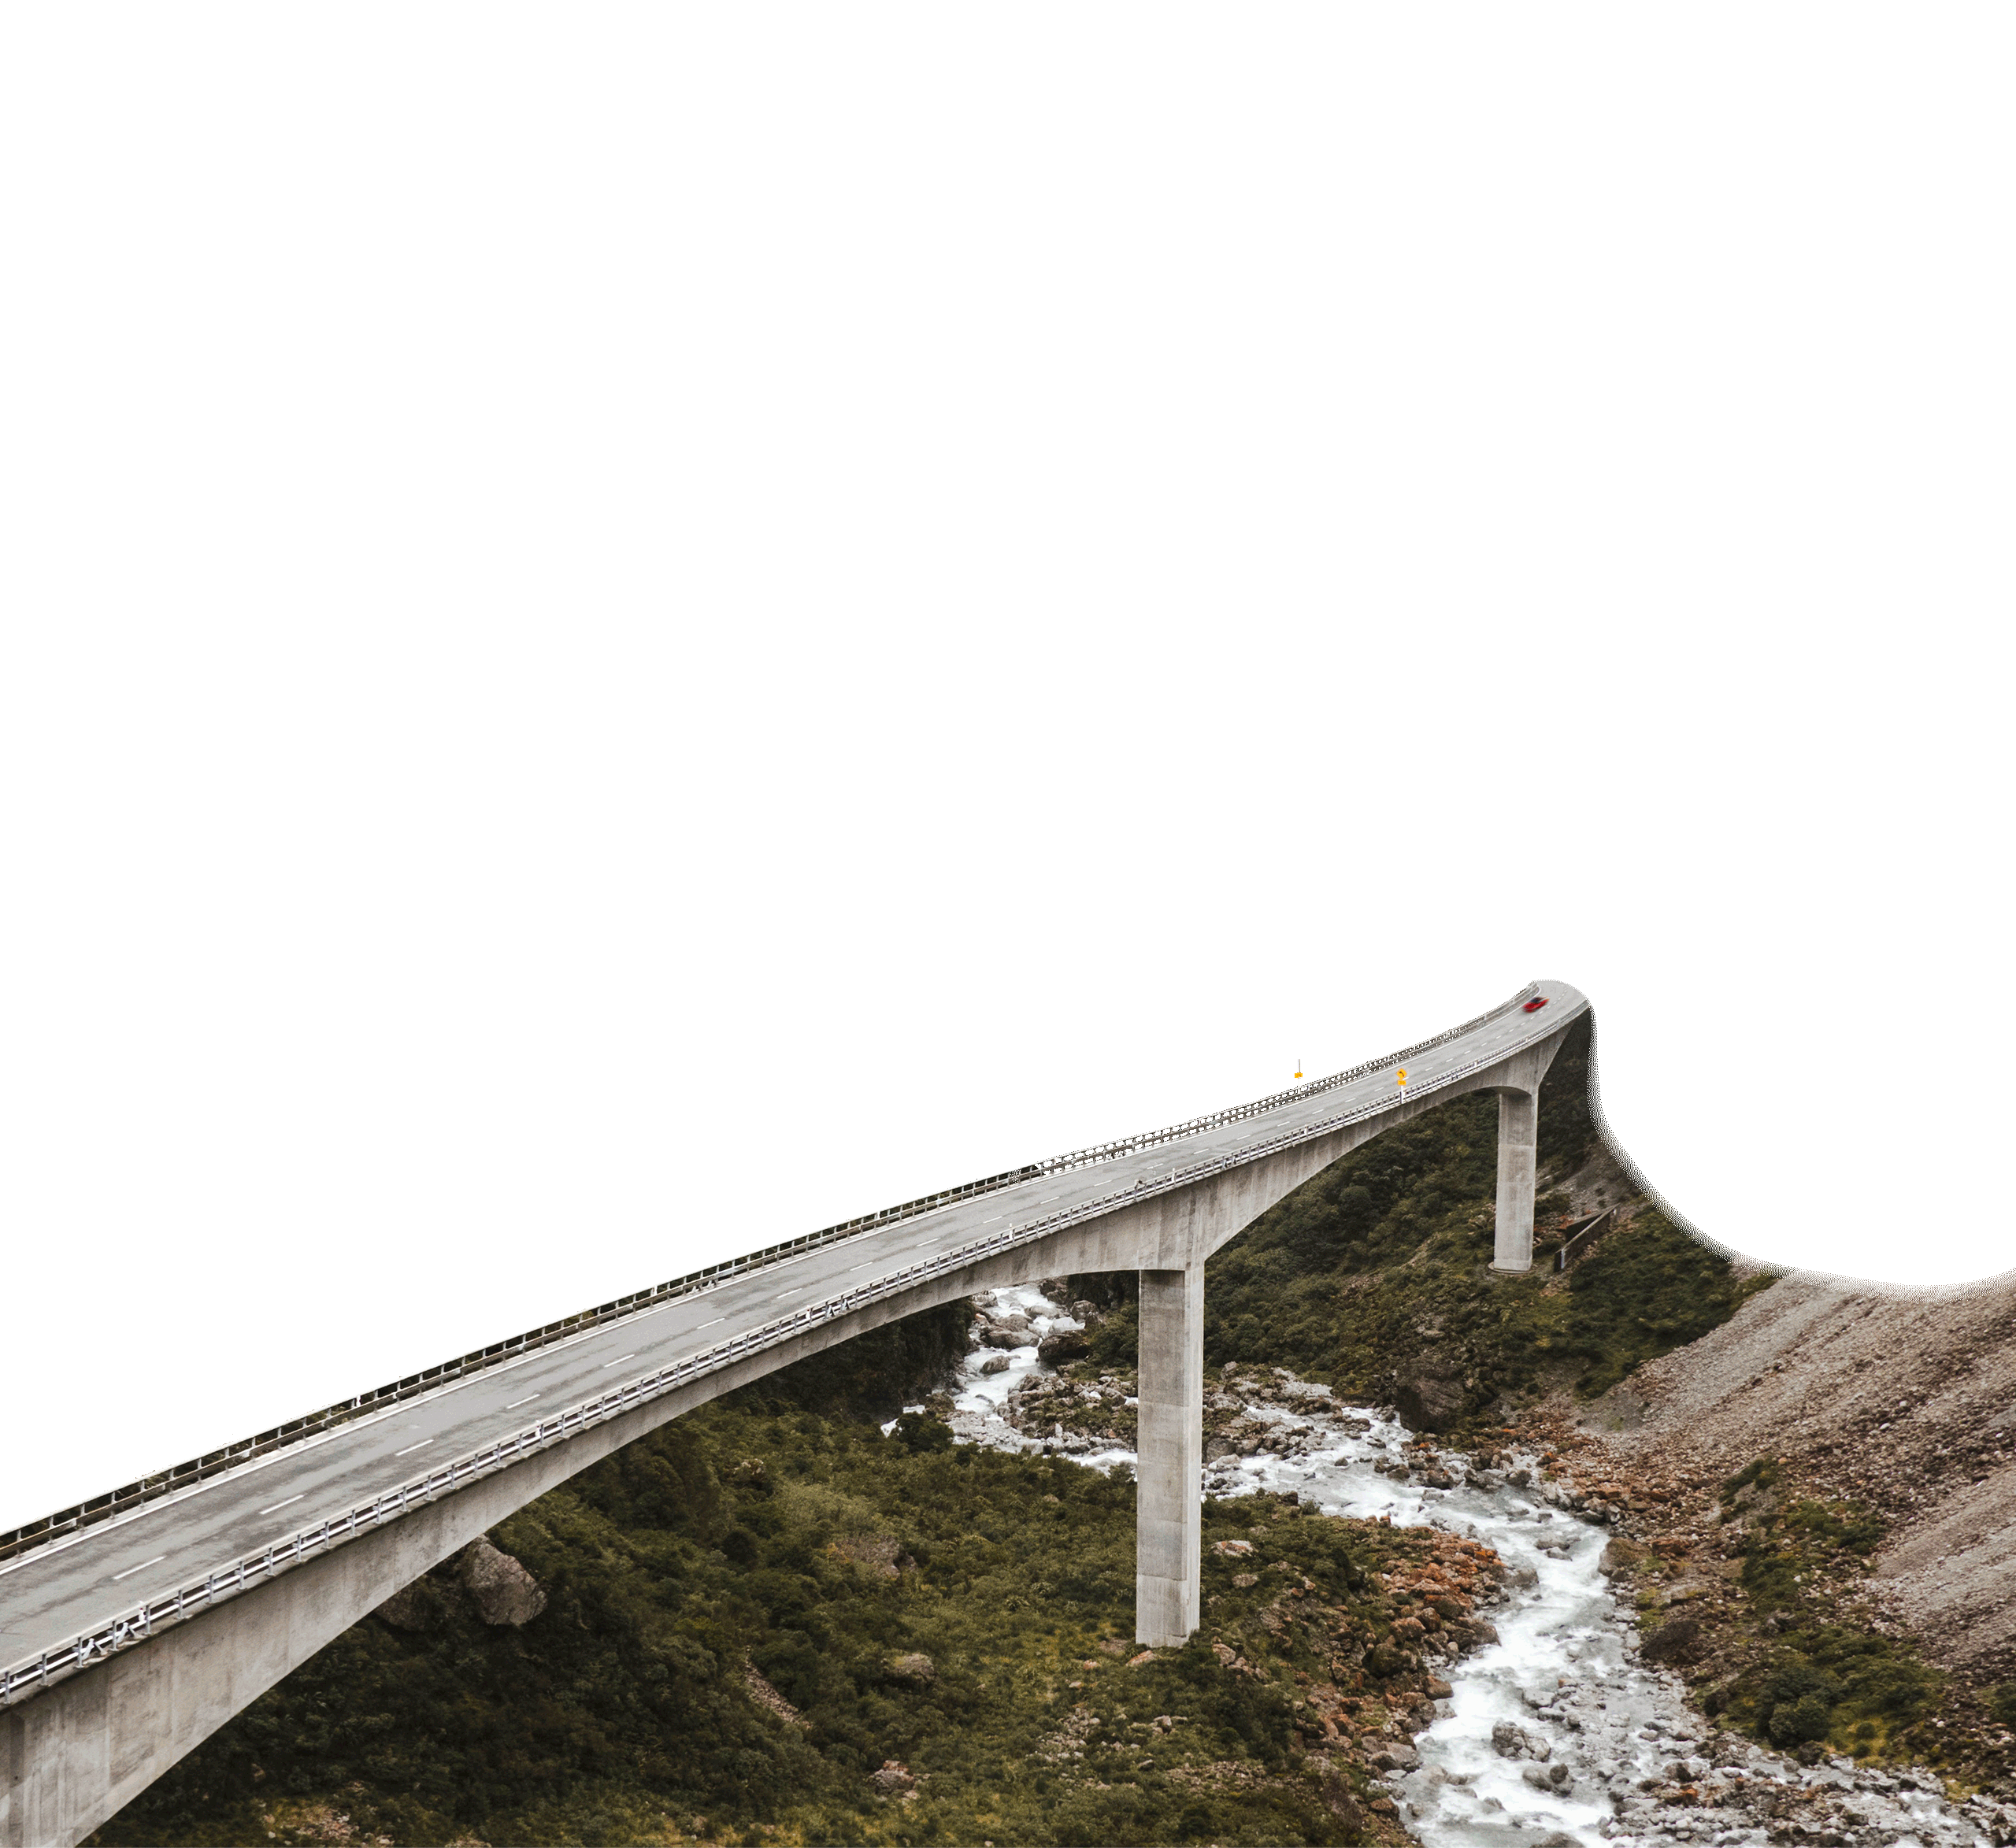 Landscape with bridge